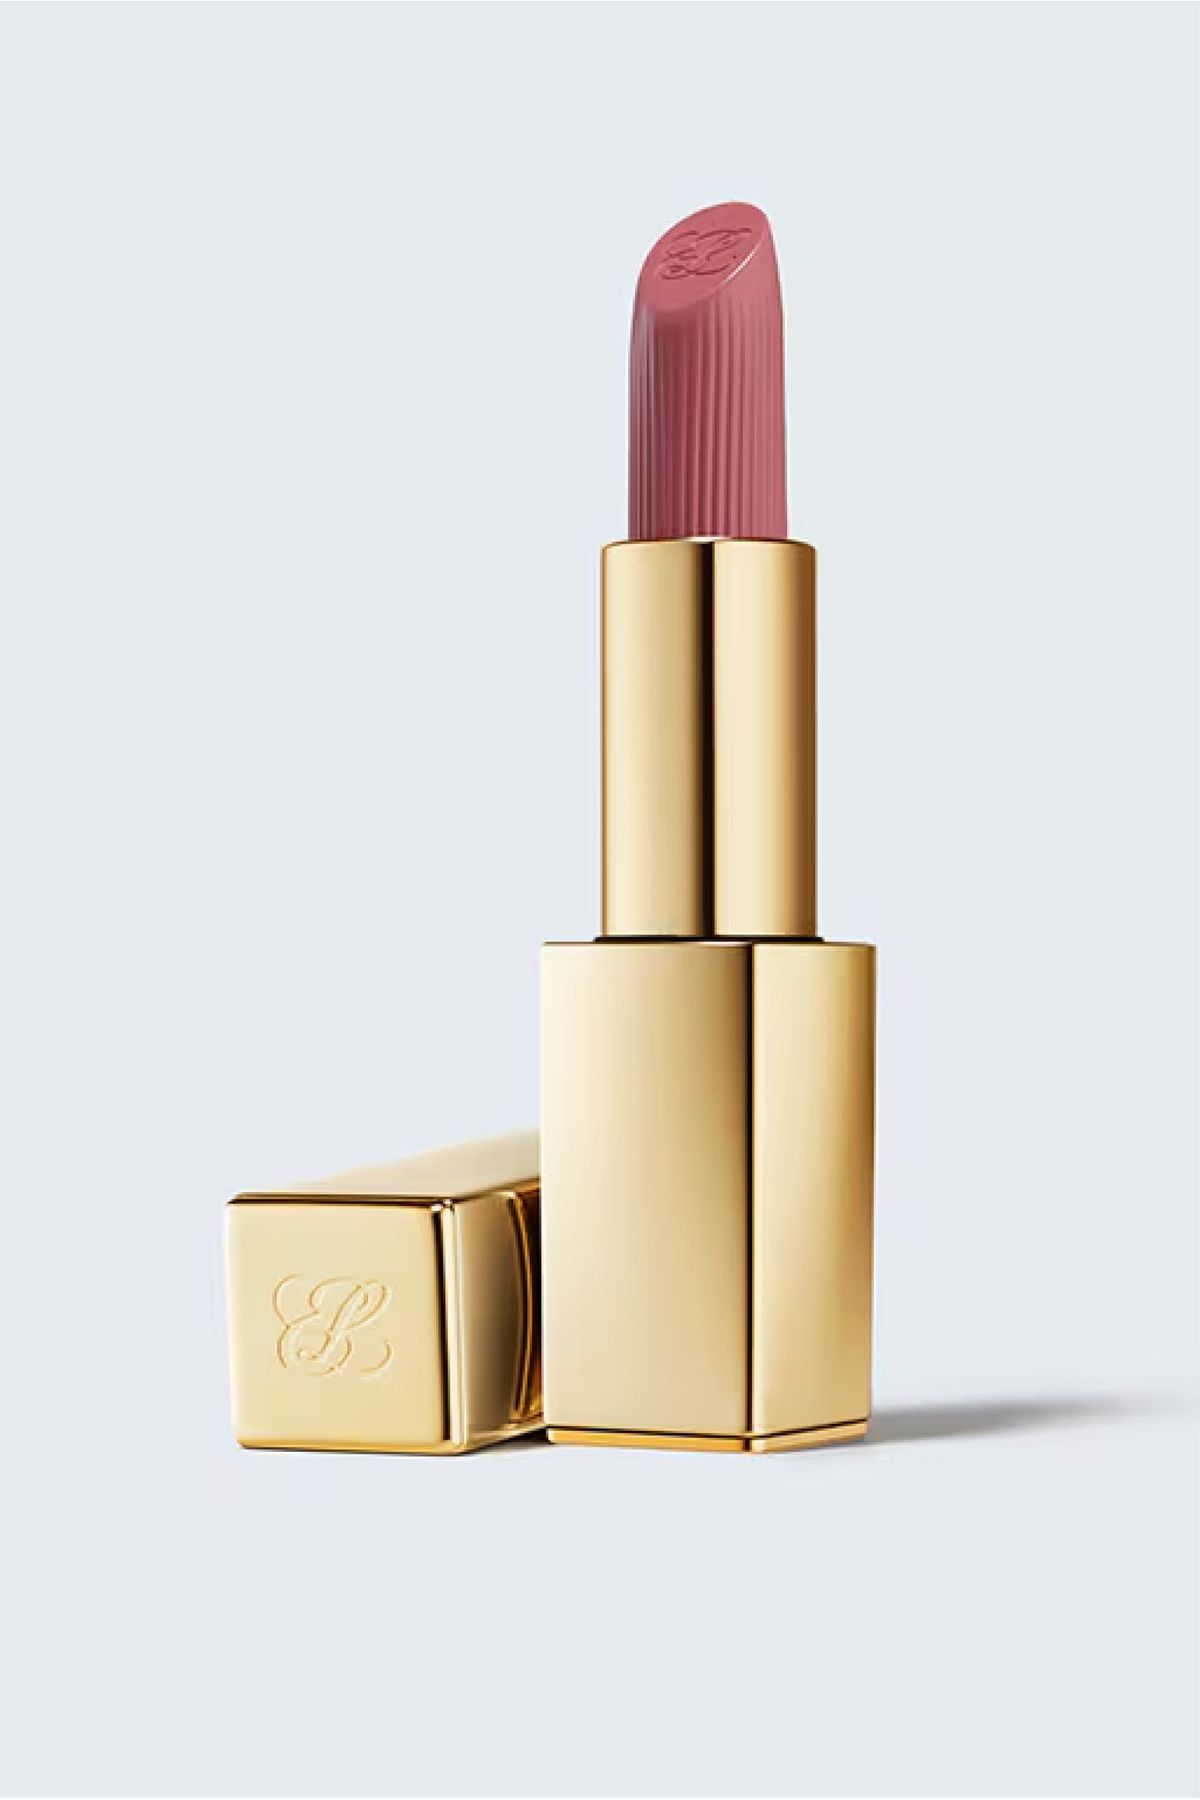 Estee Lauder Pure Color Kremsi Uzun Süre Kalıcı Ve Dolgunlaştırıcı Ruj Creme Lipstick